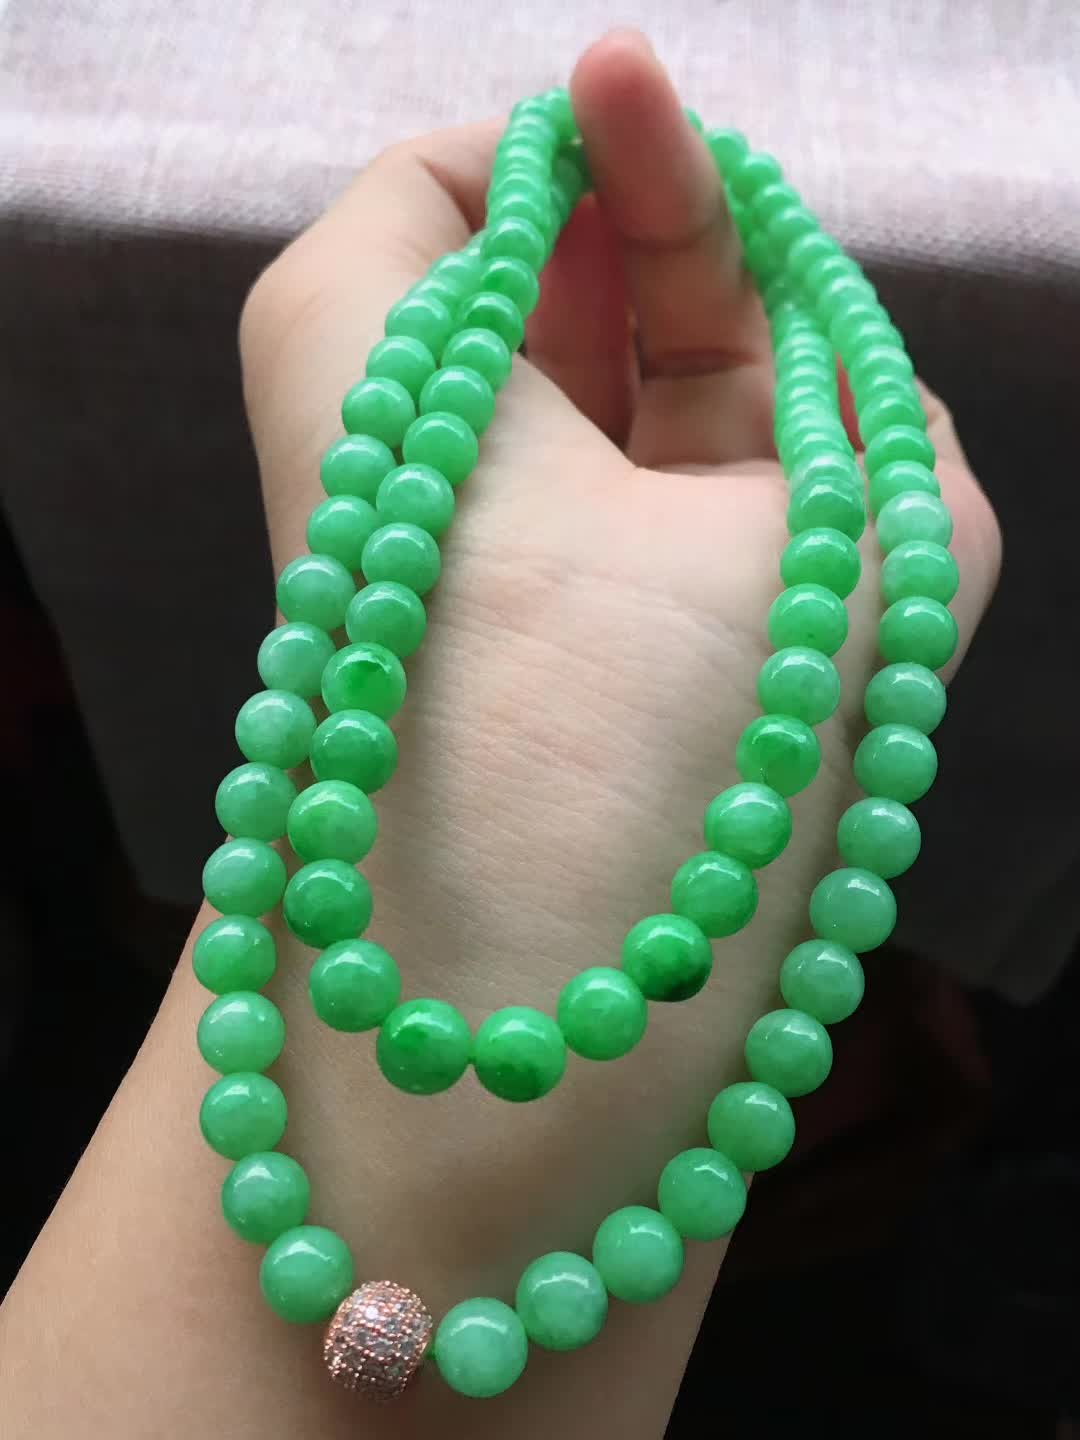 阳绿色珠链，色泽够阳，巨高性价比推荐，配挂件做做毛衣链都好有面子，尺寸6.8，粒！